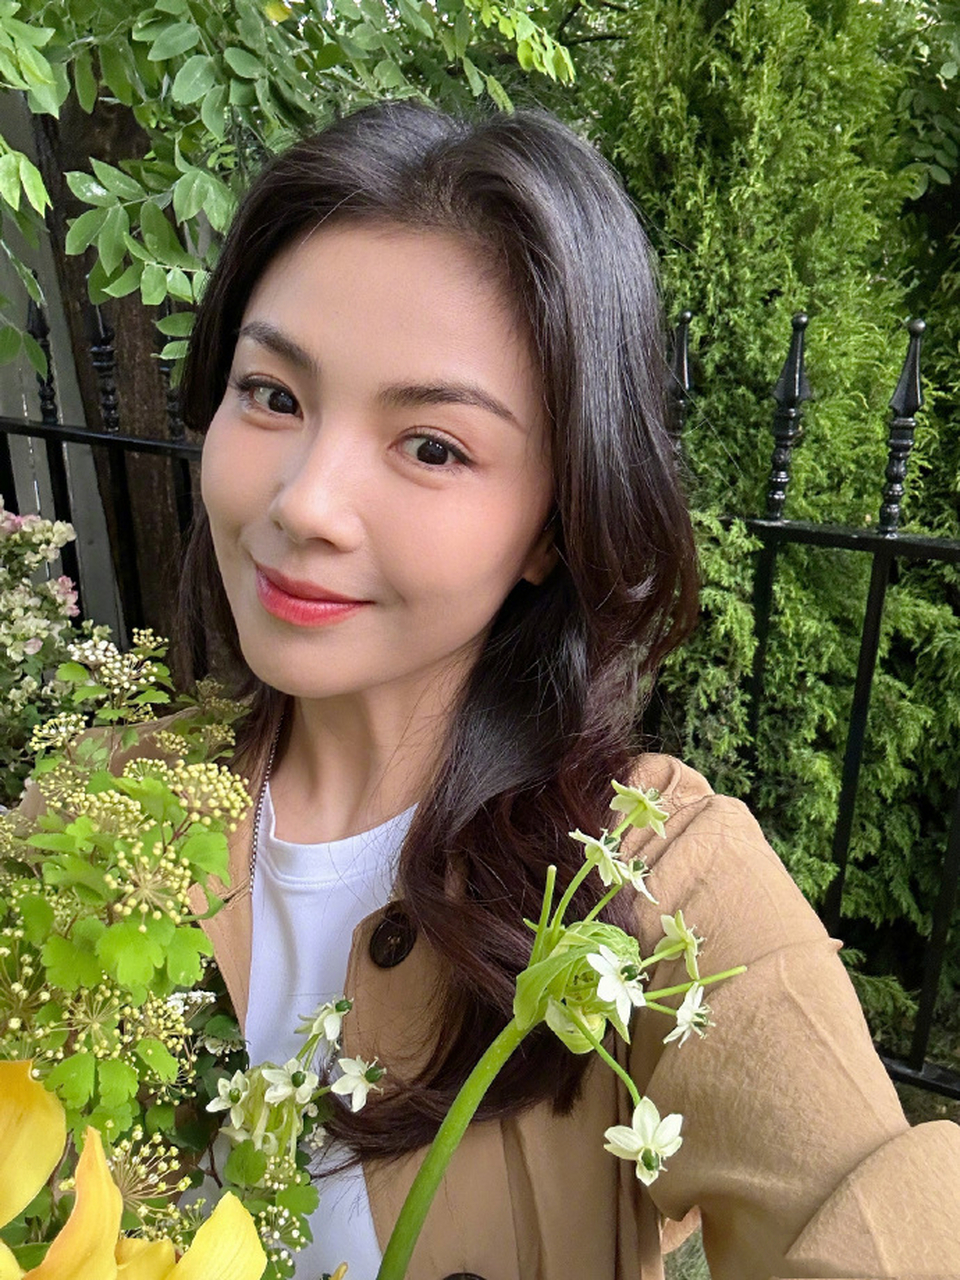 近日,刘涛分享近照,她在花束前自拍优雅大方,对镜微笑温柔可人